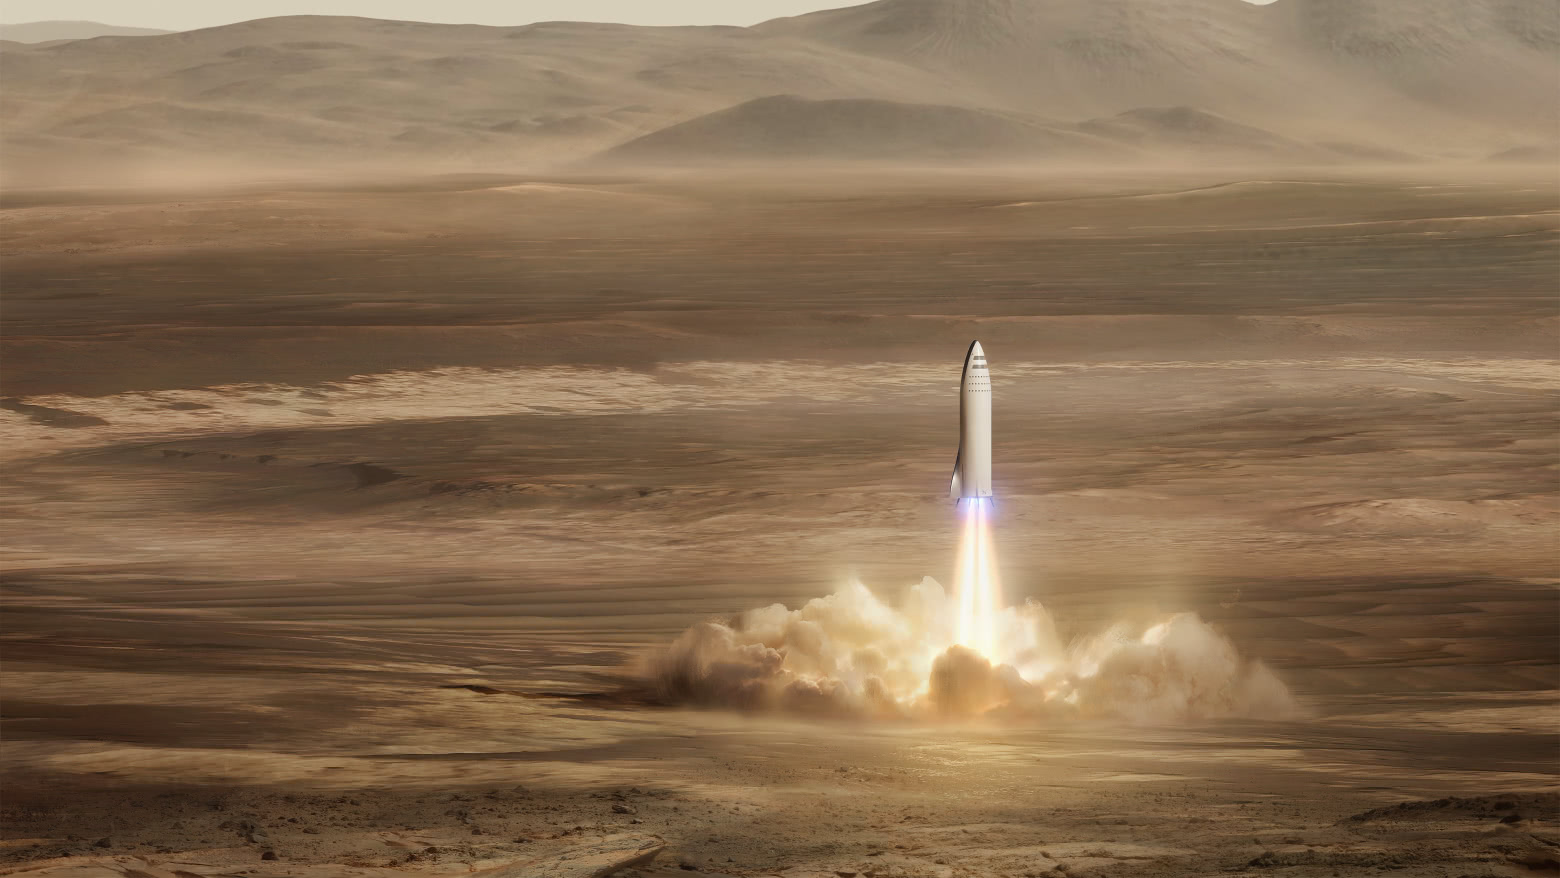 ЦНИИмаш: SpaceX якобы реализует советские разработки. Почему у Илона Маска столько врагов - 1